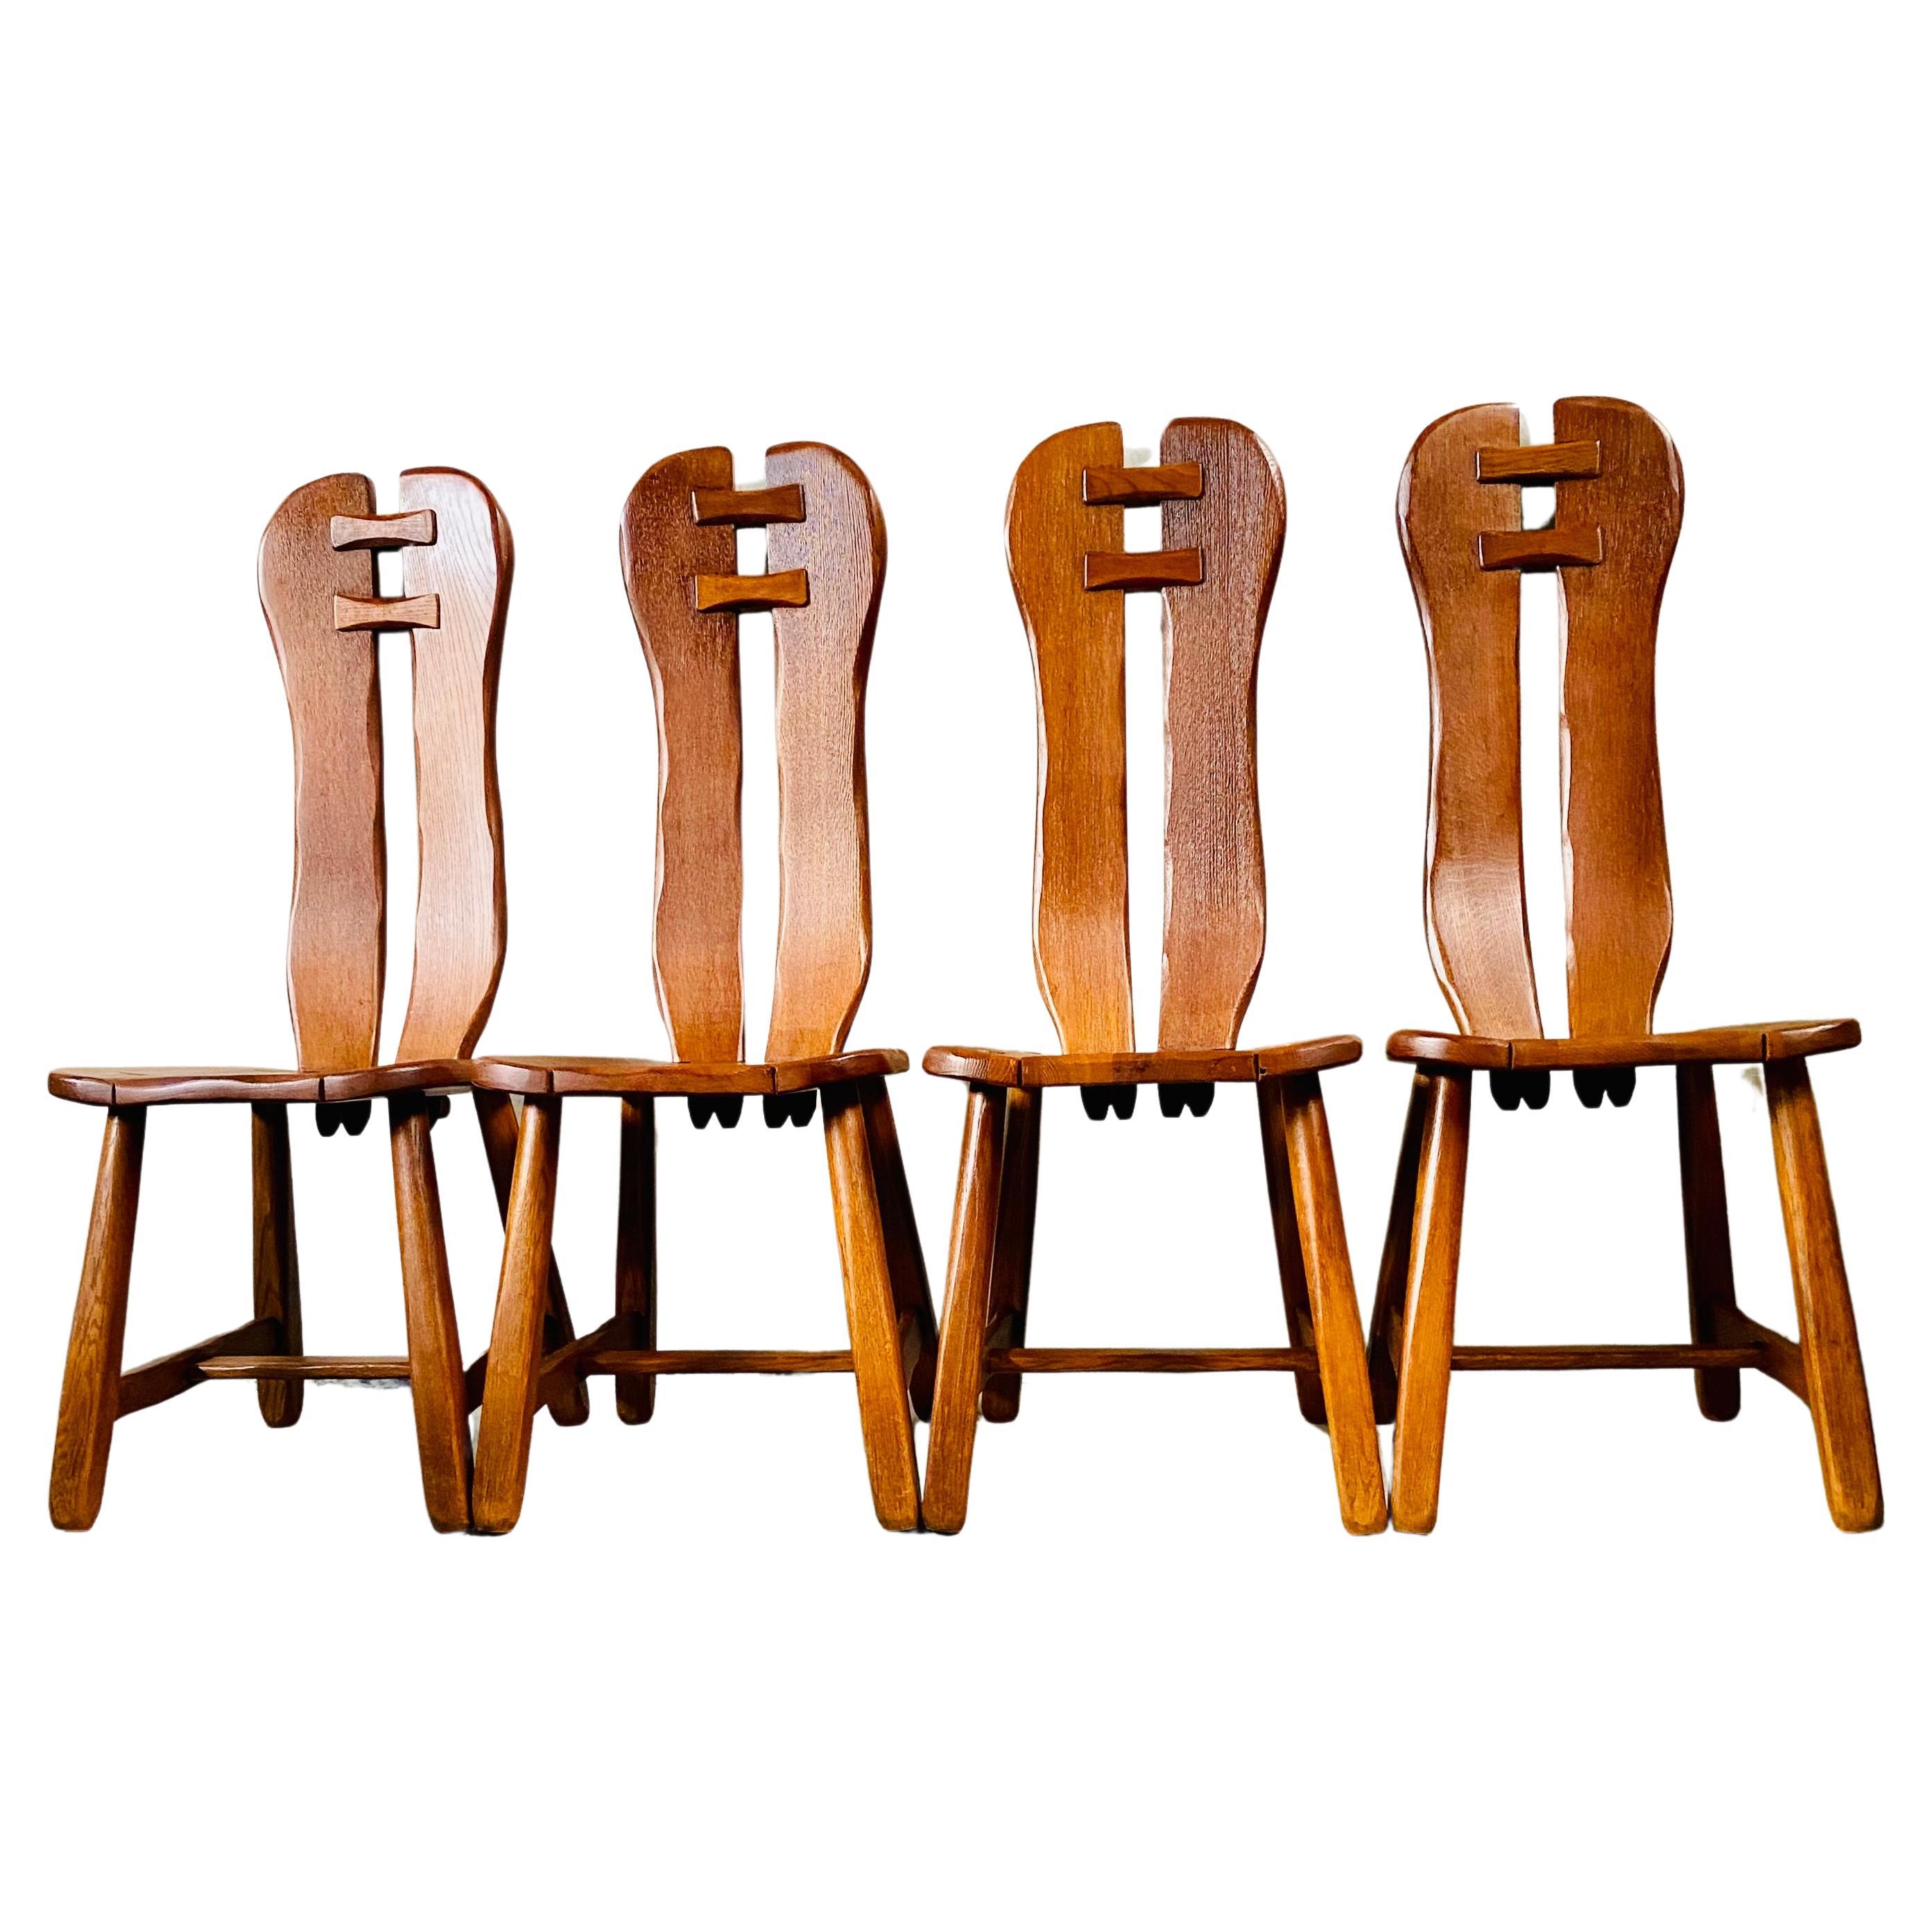 Brutalist Solid Oak Art Dining Chairs by "Kunstmeubelen De Puydt", Belgium 1970s